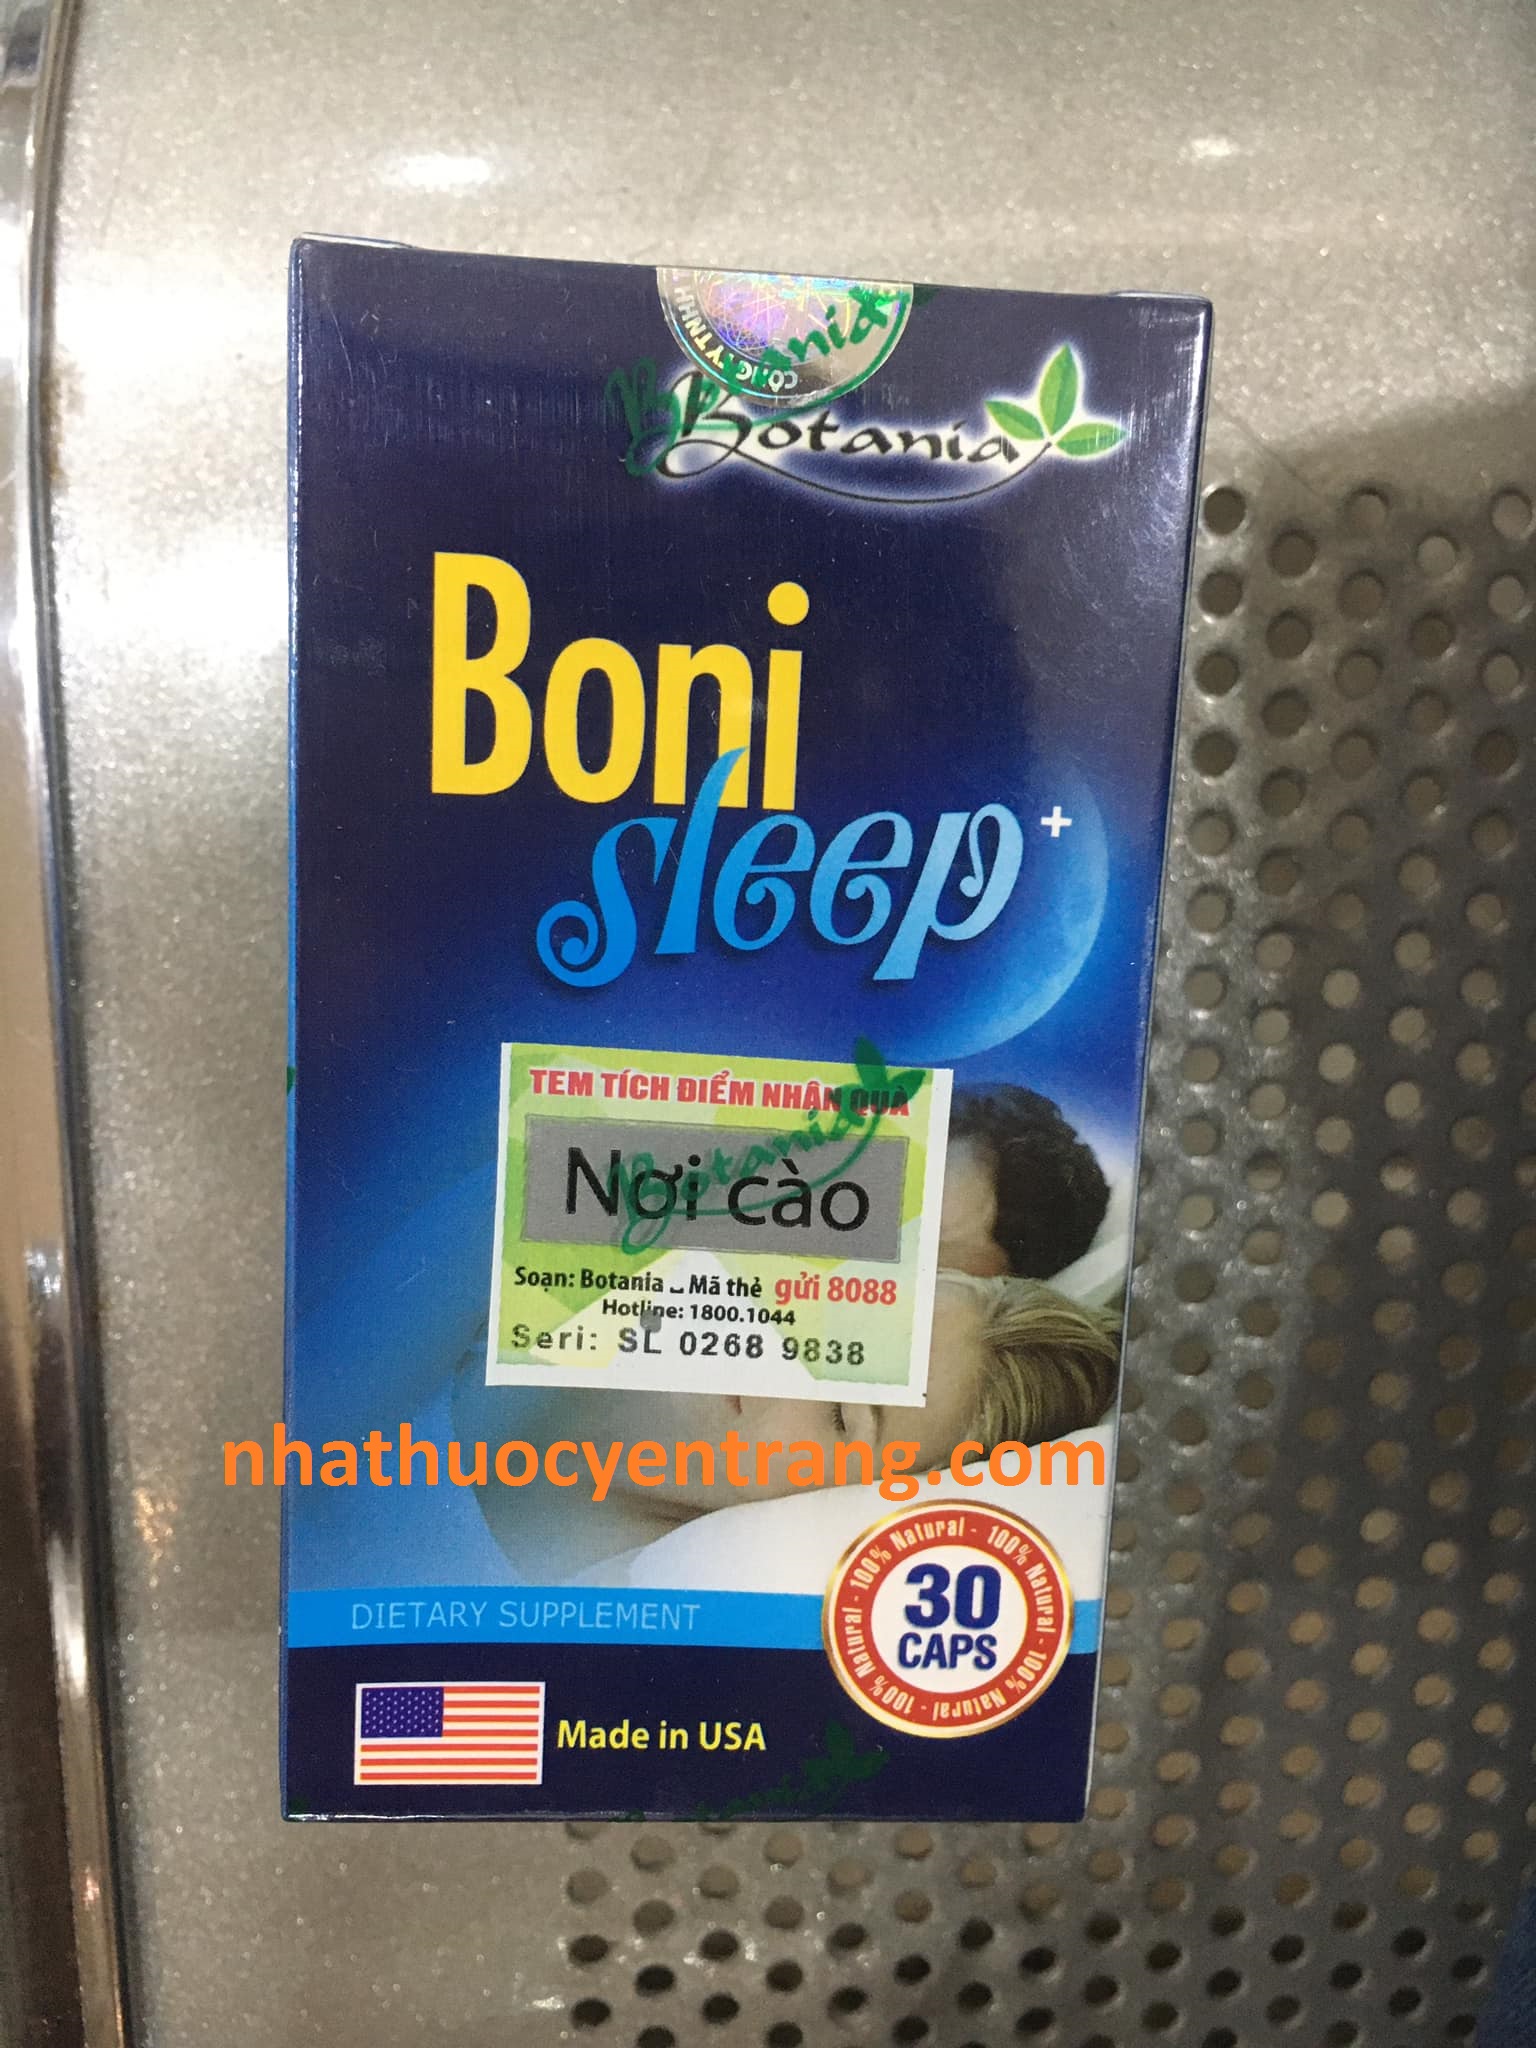 Boni Sleep